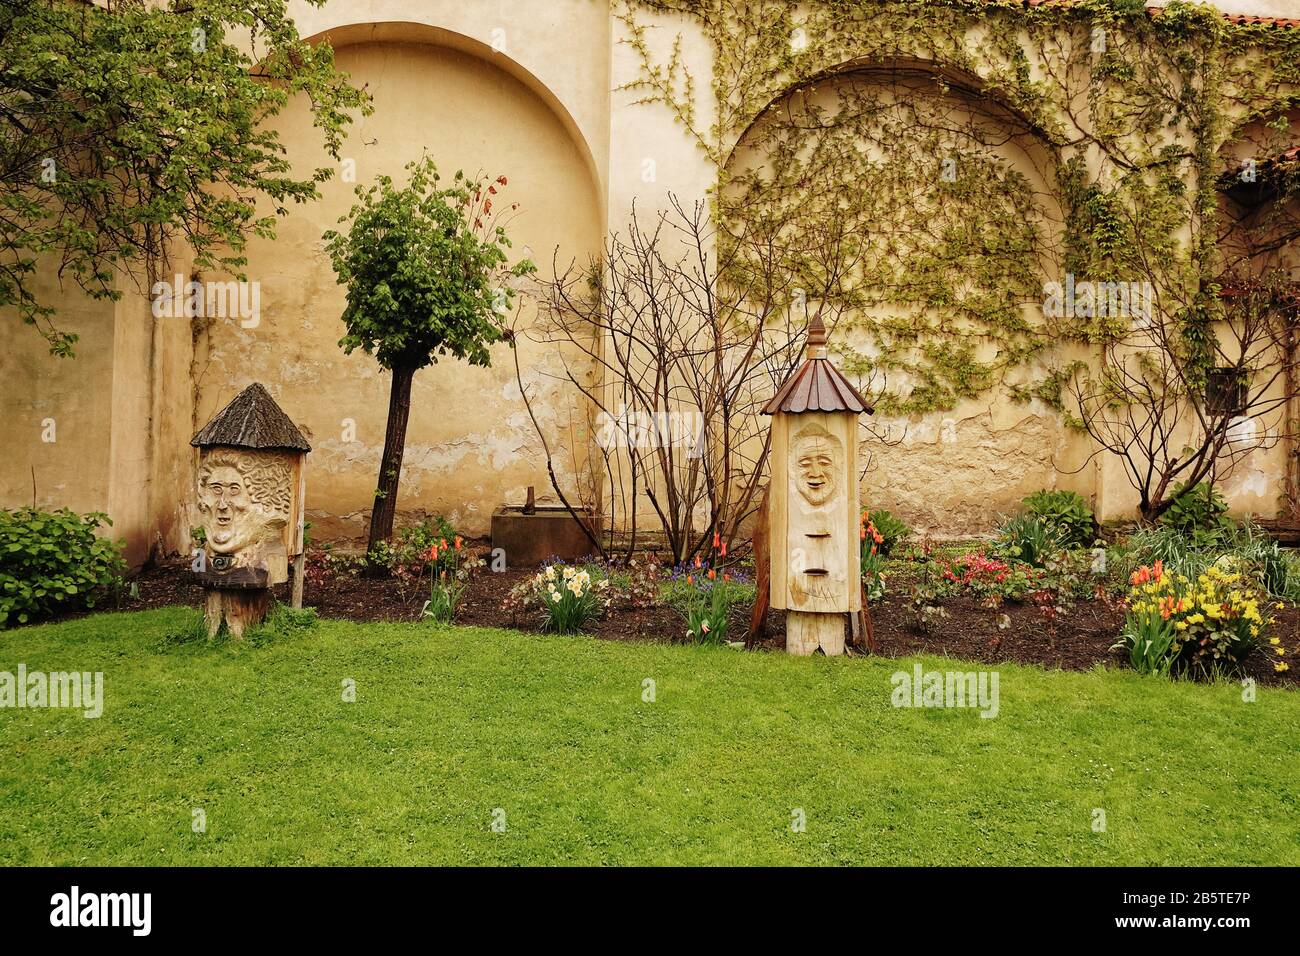 Geschnitzte Baumstumpf-Narben bewachen das Blumenbeet in den Vojan Gardens, einem ruhigen Stadtpark mit Pfauen Spazierwegen, grünen Rasenflächen, Gärten und Obstbäumen Stockfoto